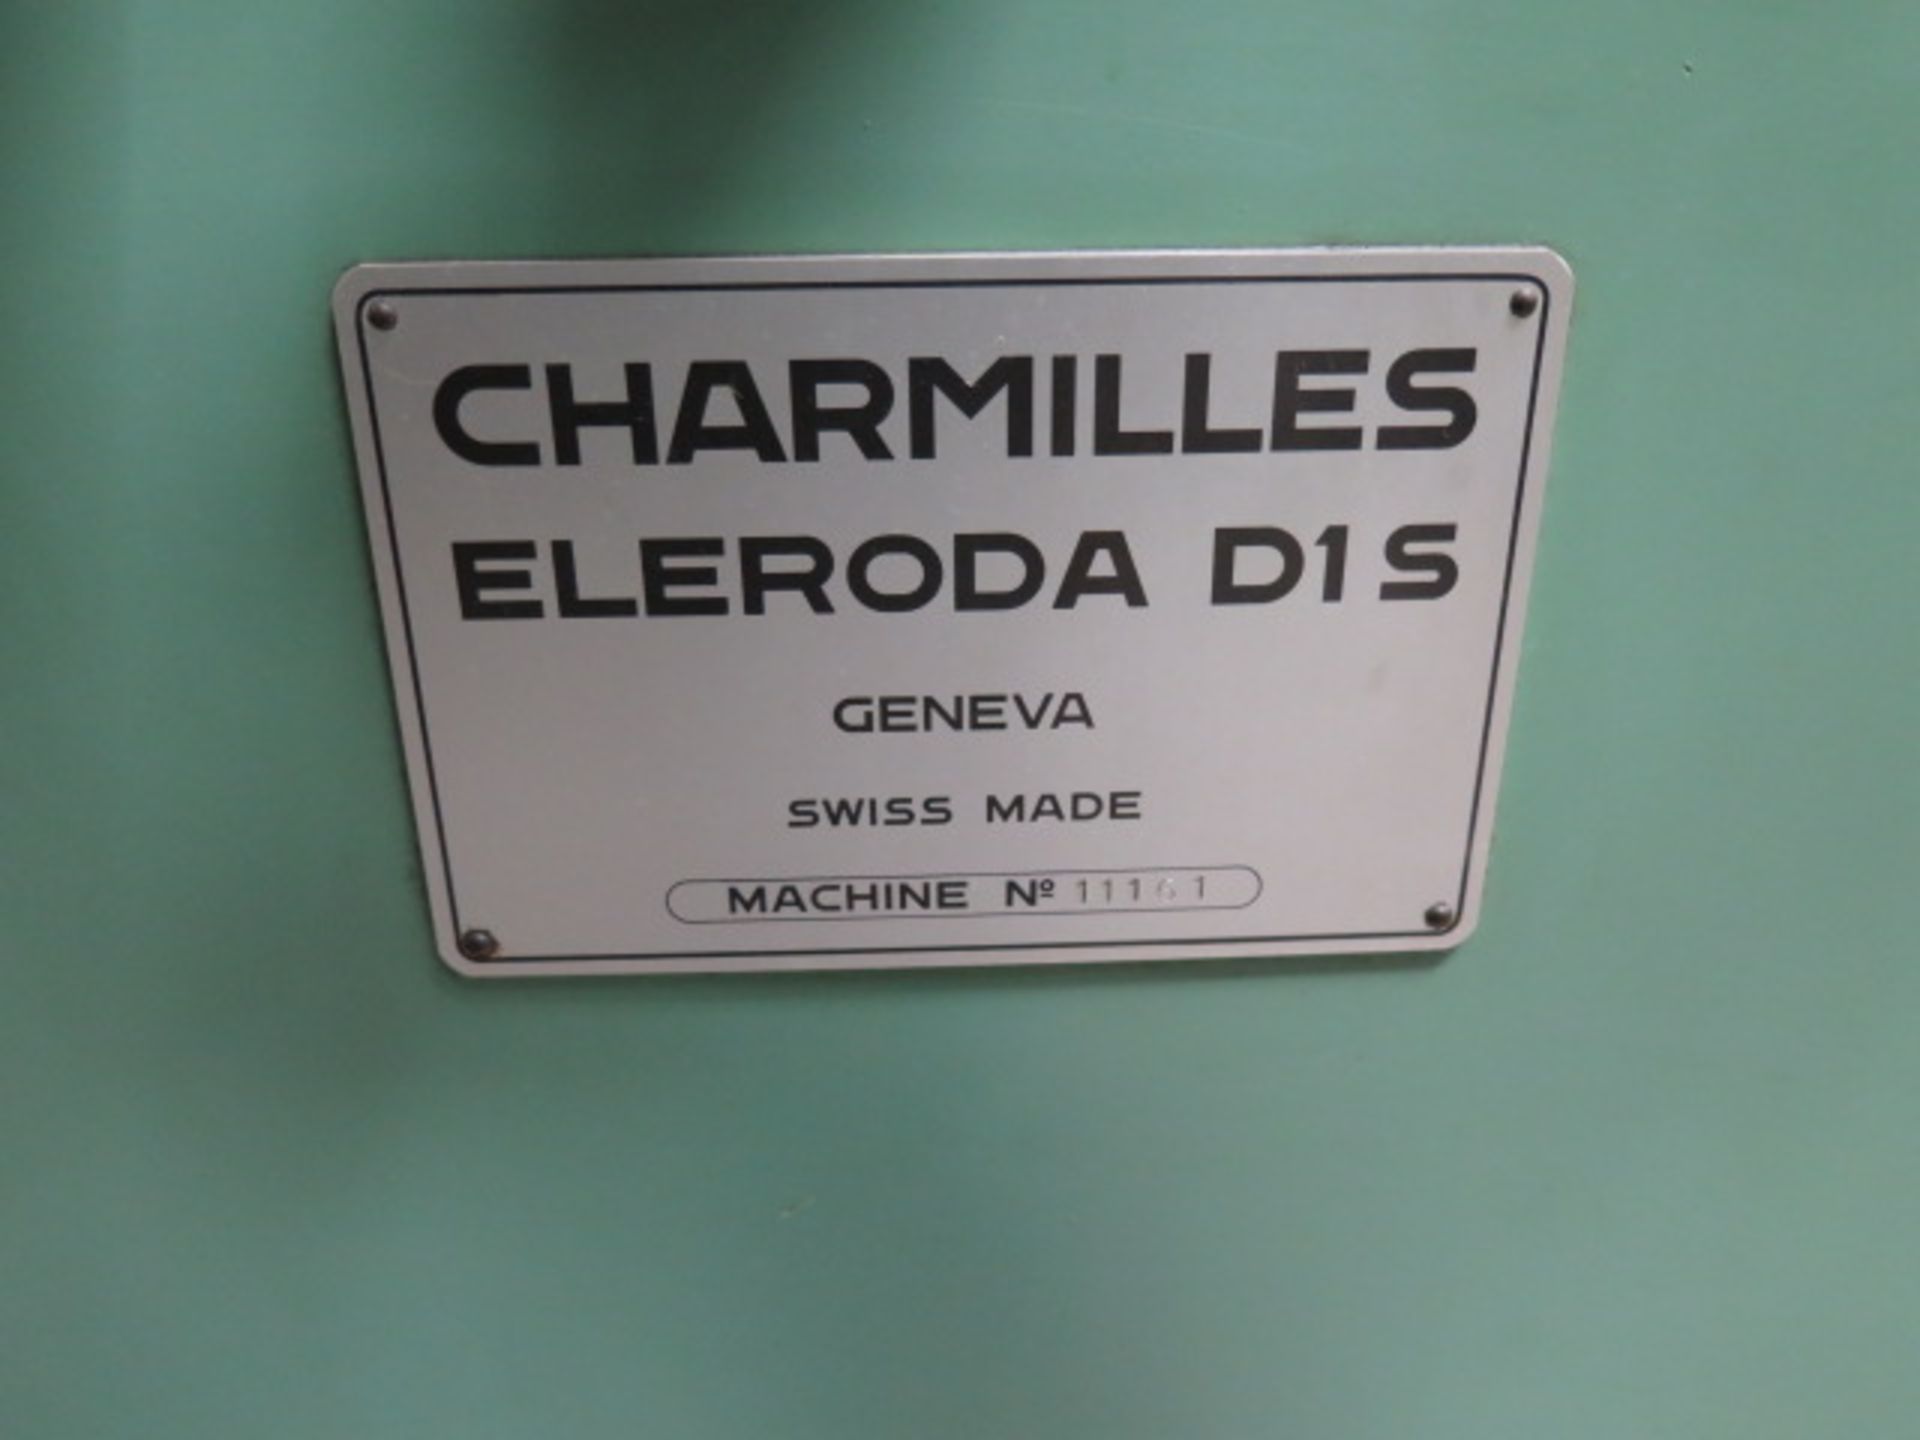 Charmilles Eleroda D1S Die Sinker EDM Machine s/n 11161 w/ Impulse P2 Power Source SOLD AS IS - Image 4 of 16